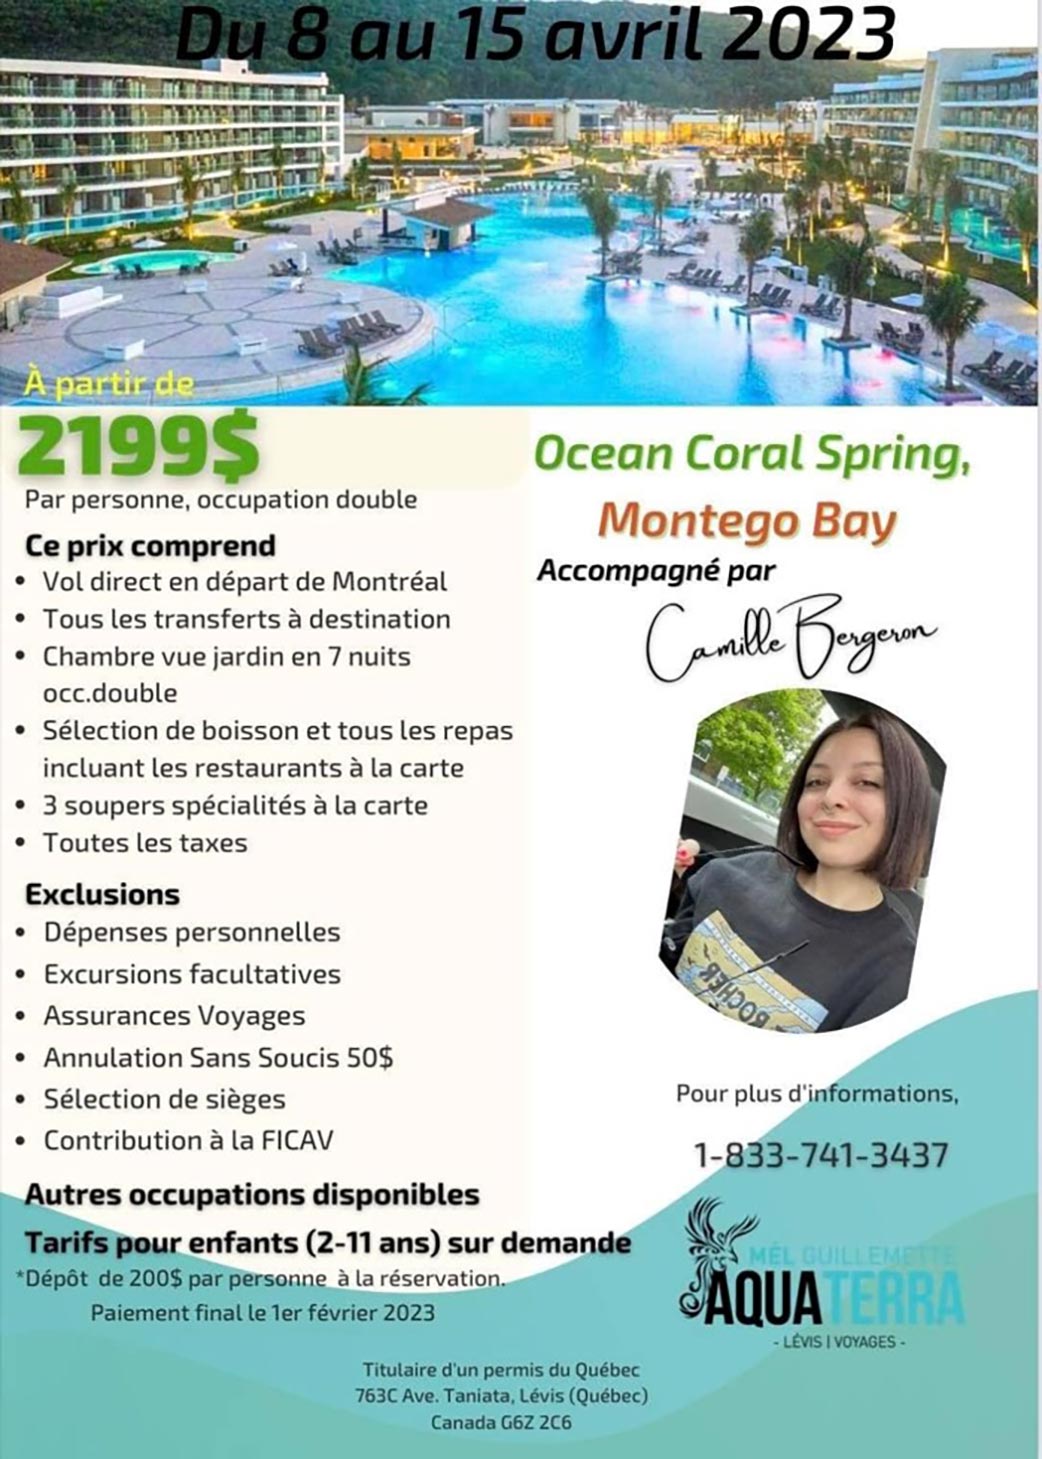 Voyage au Ocean Coral Spring, Montego Bay du 8 au 15 avril 2023